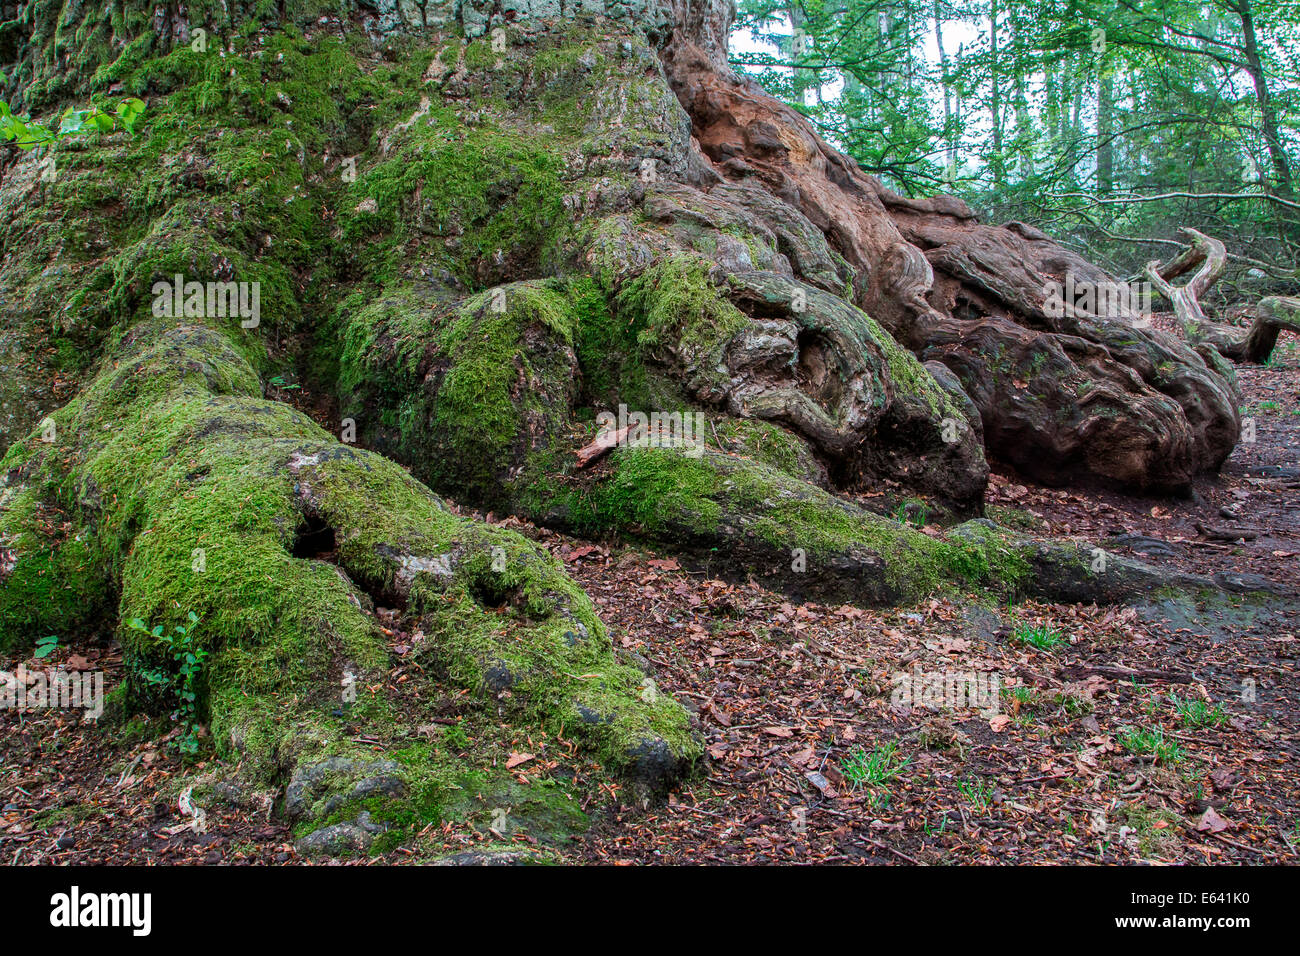 Vieux chêne pédonculé ou chêne pédonculé (Quercus robur), détail, Urwald Sababurg, forêt vierge, Hesse du Nord, Hesse, Allemagne Banque D'Images